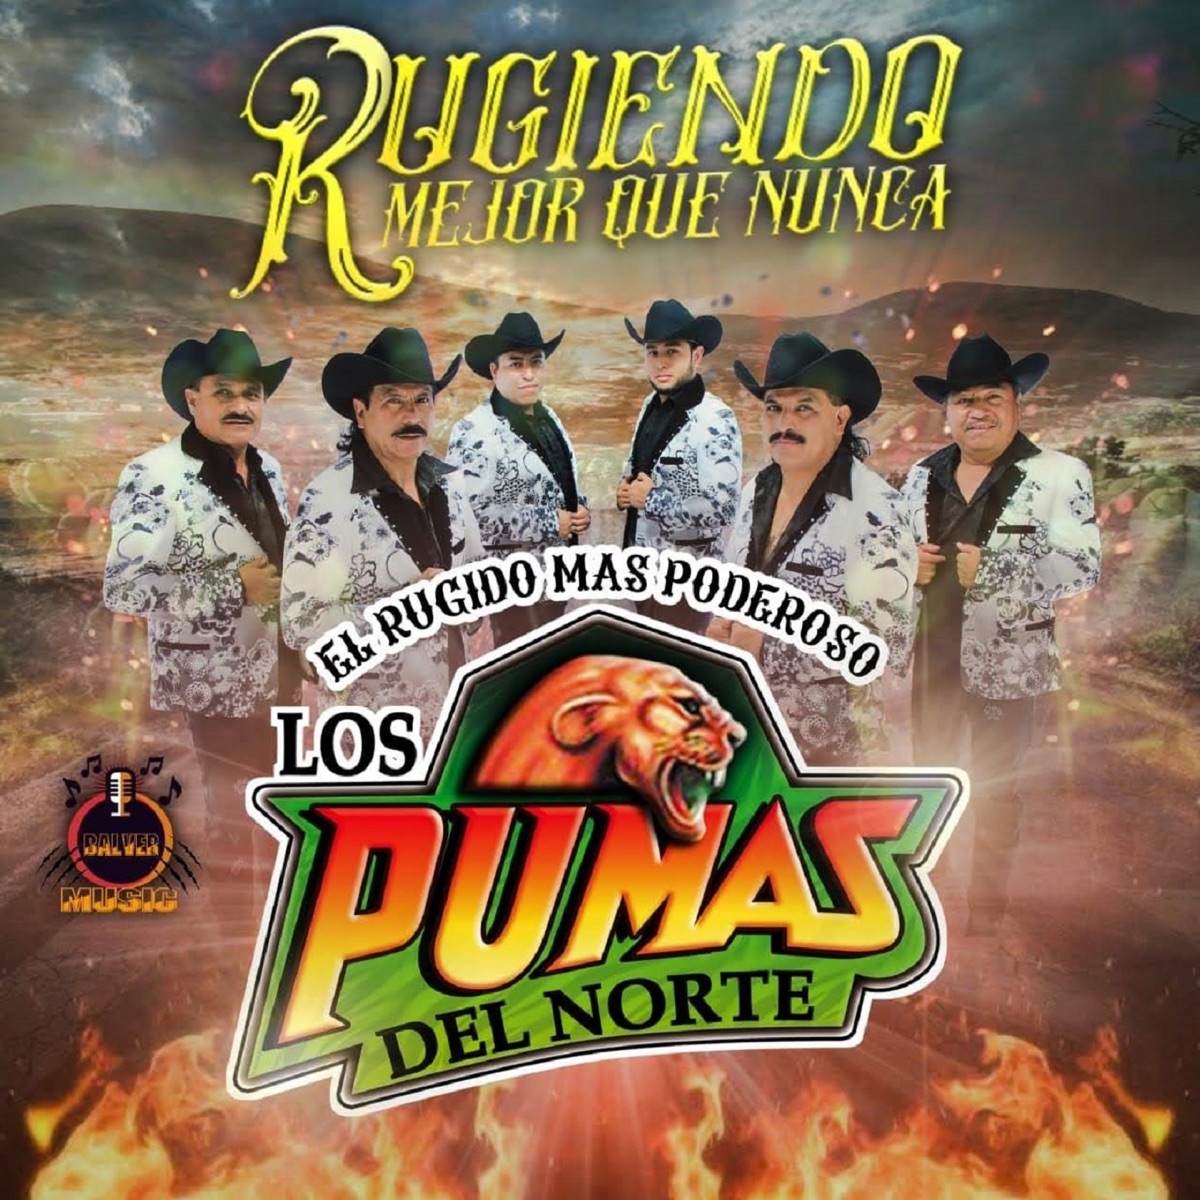 Ojitos Negros - Album by Los Pumas del Norte - Apple Music